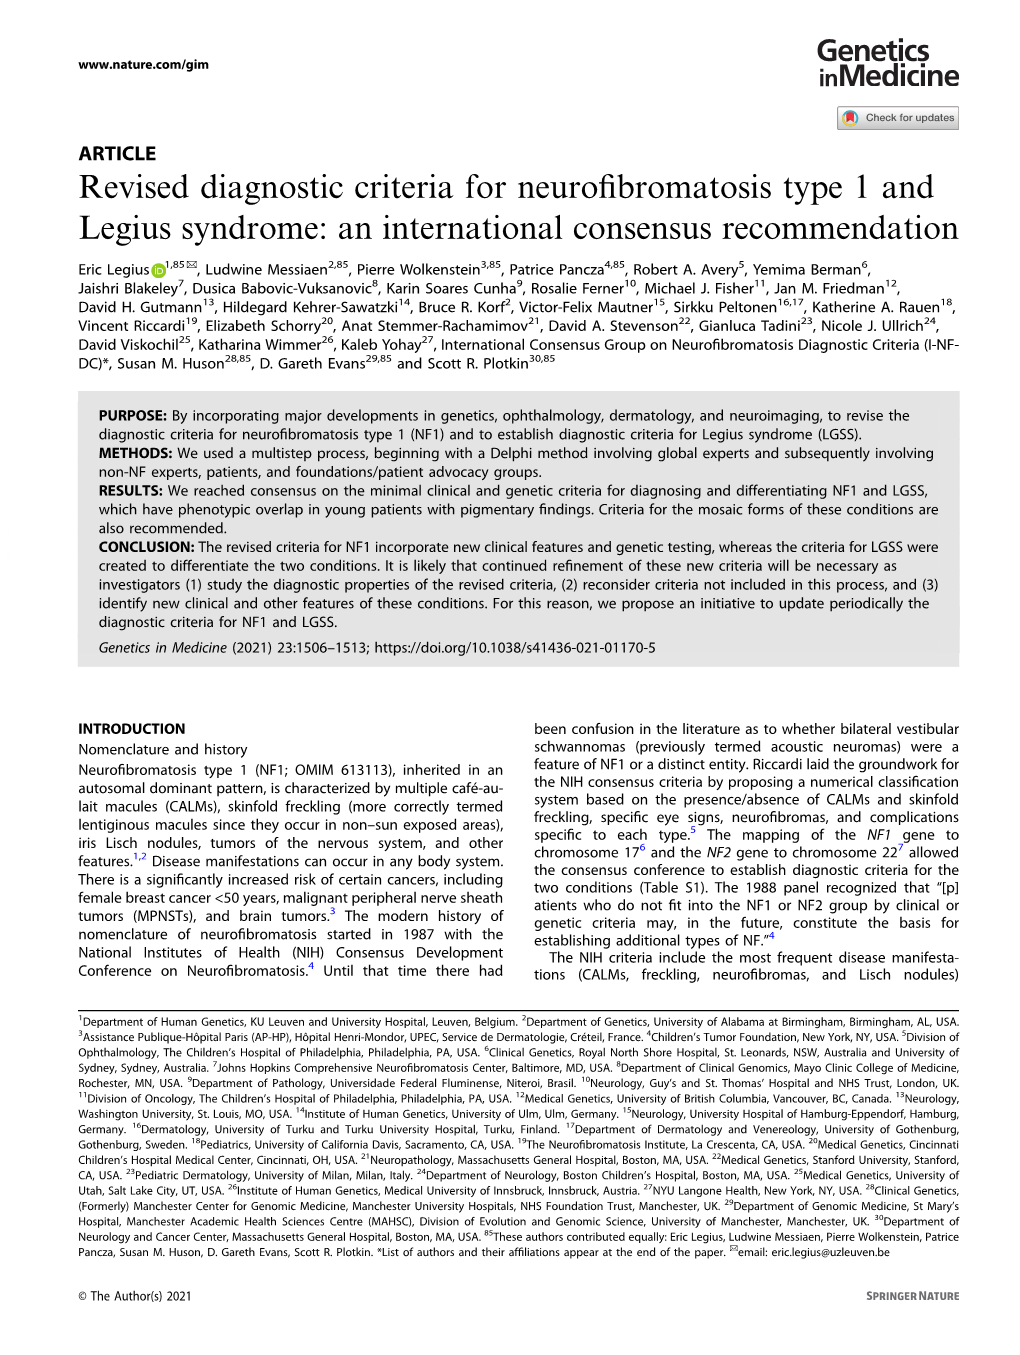 Revised Diagnostic Criteria for Neurofibromatosis Type 1